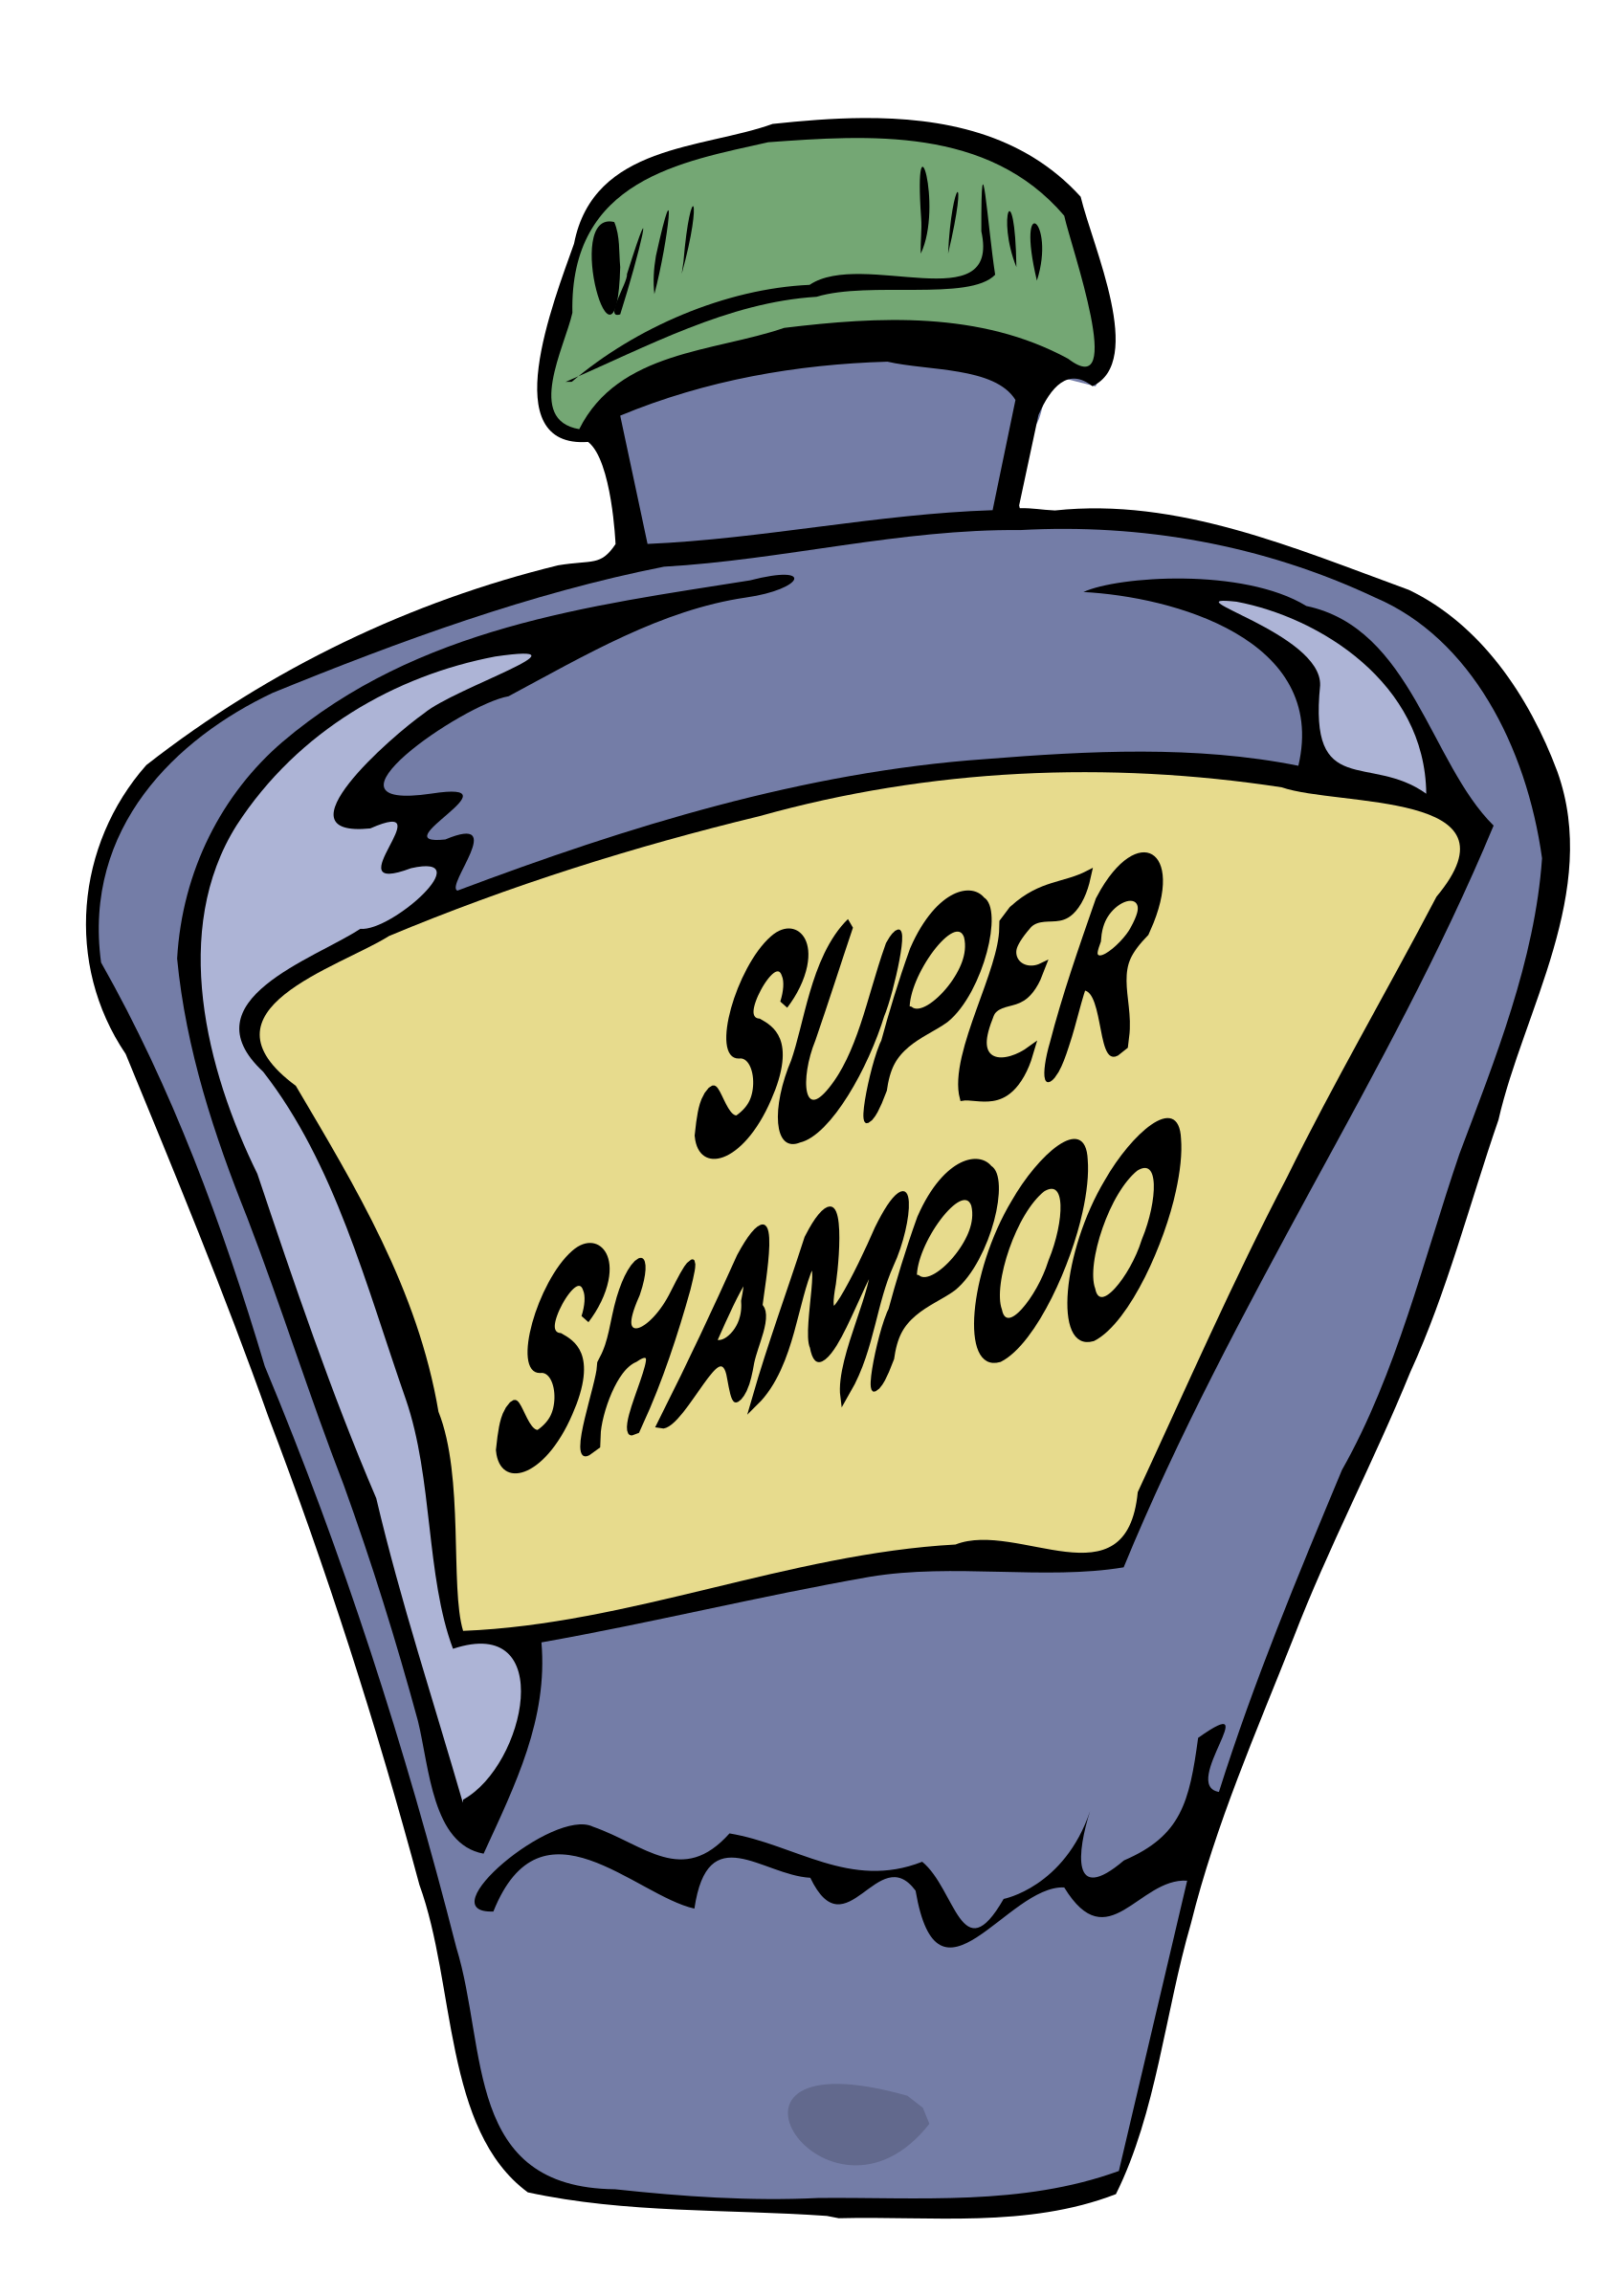 shampoo clipart soap shampoo